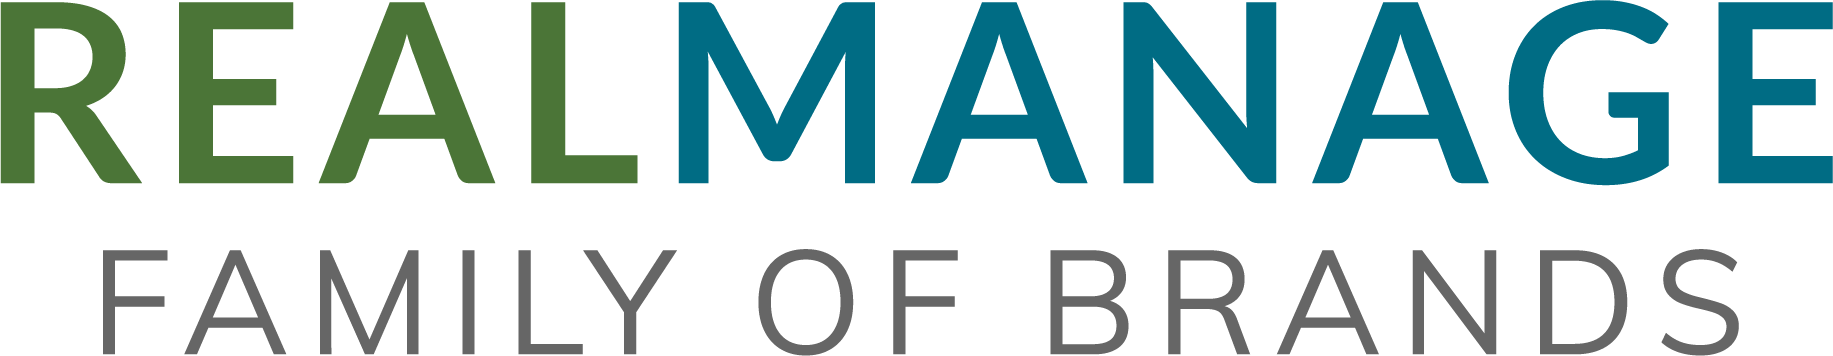 RealManage Family of Brands - Orlando logo